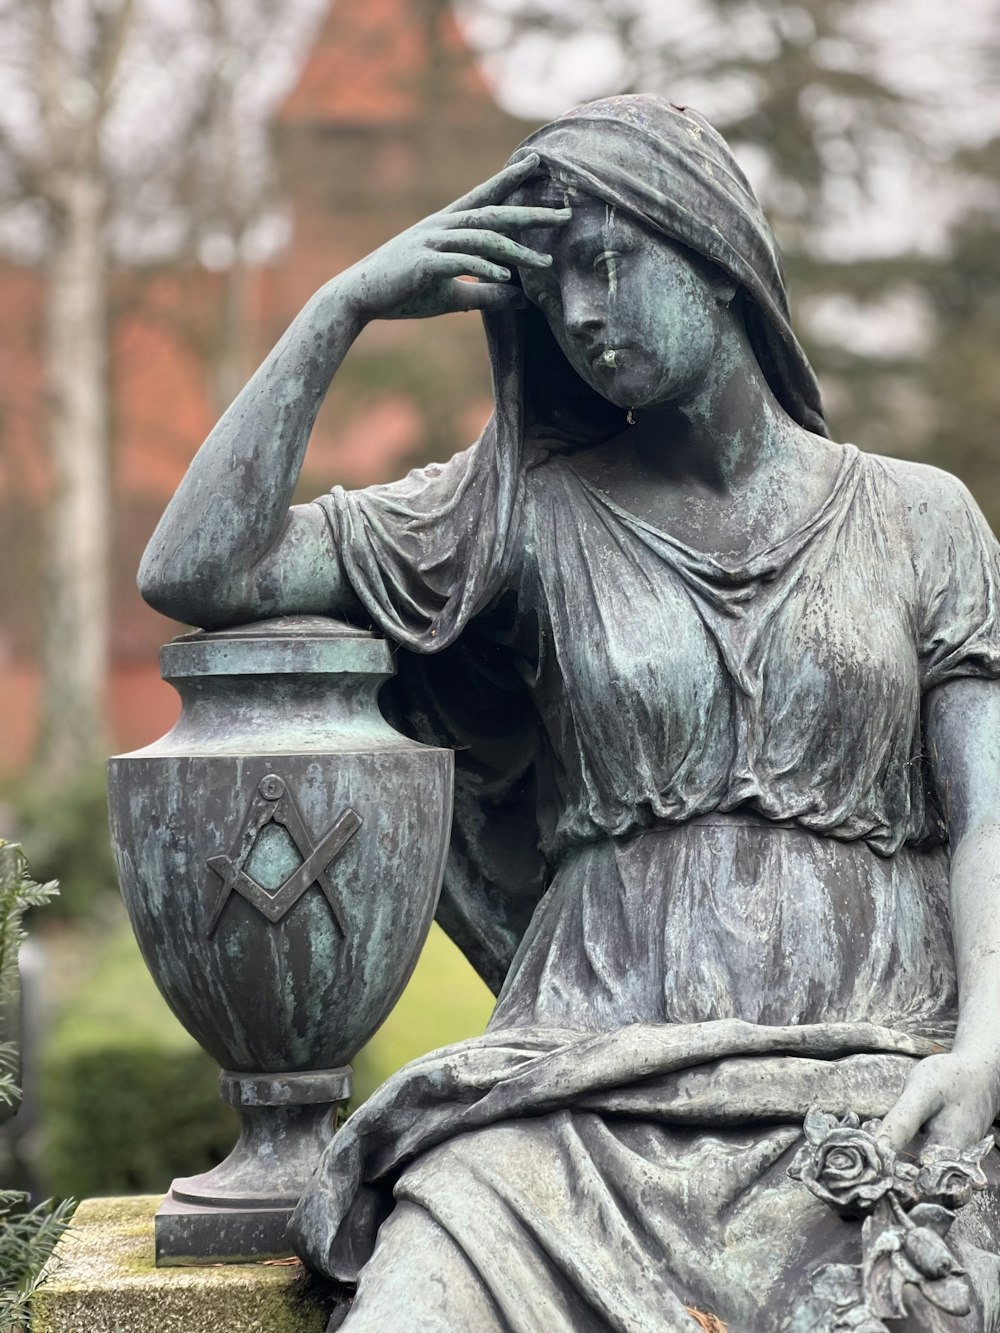 Una statua di una donna seduta accanto a un vaso foto – Adulto Immagine  gratuita su Unsplash